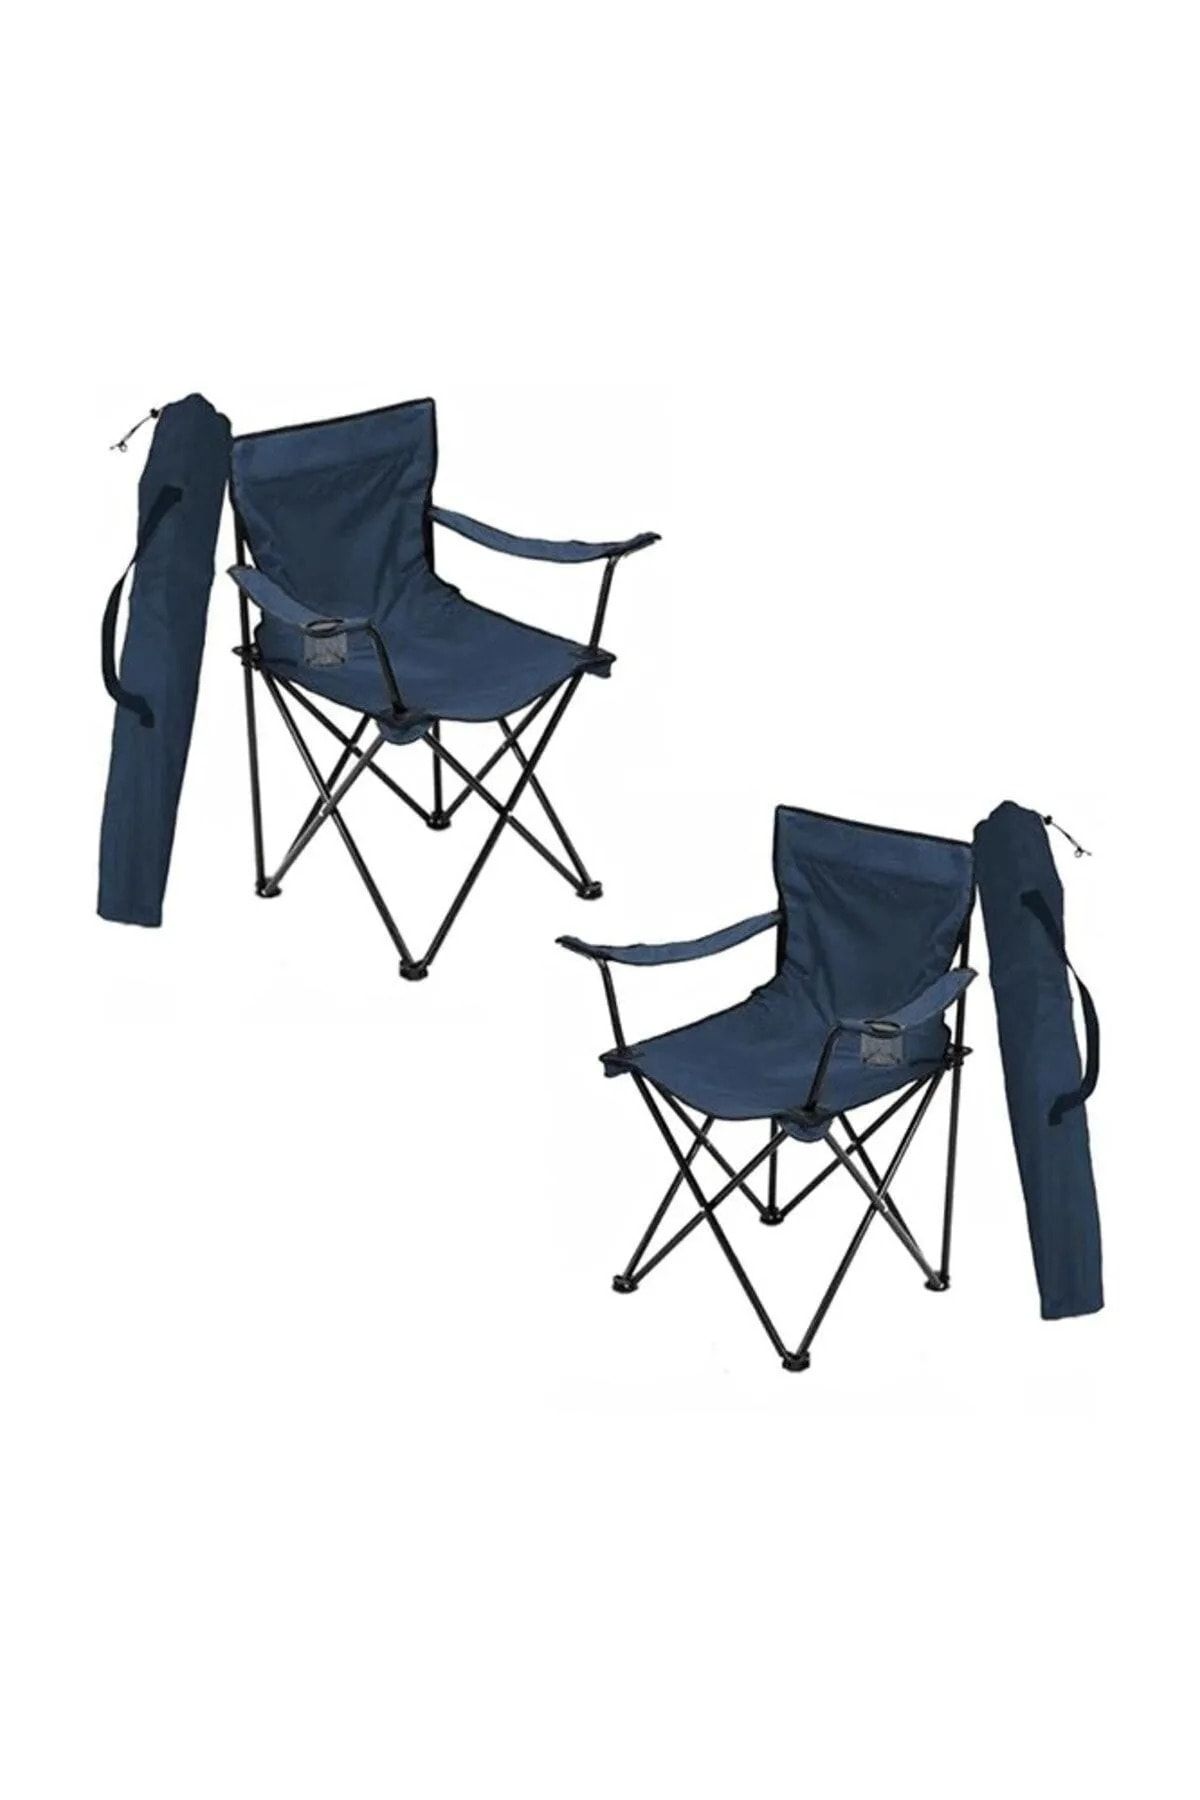 Genel Markalar Kamp Sandelyesi Katlanır Sandalye Piknik Sandalyesi Çantalı Fiyat 2 Adet